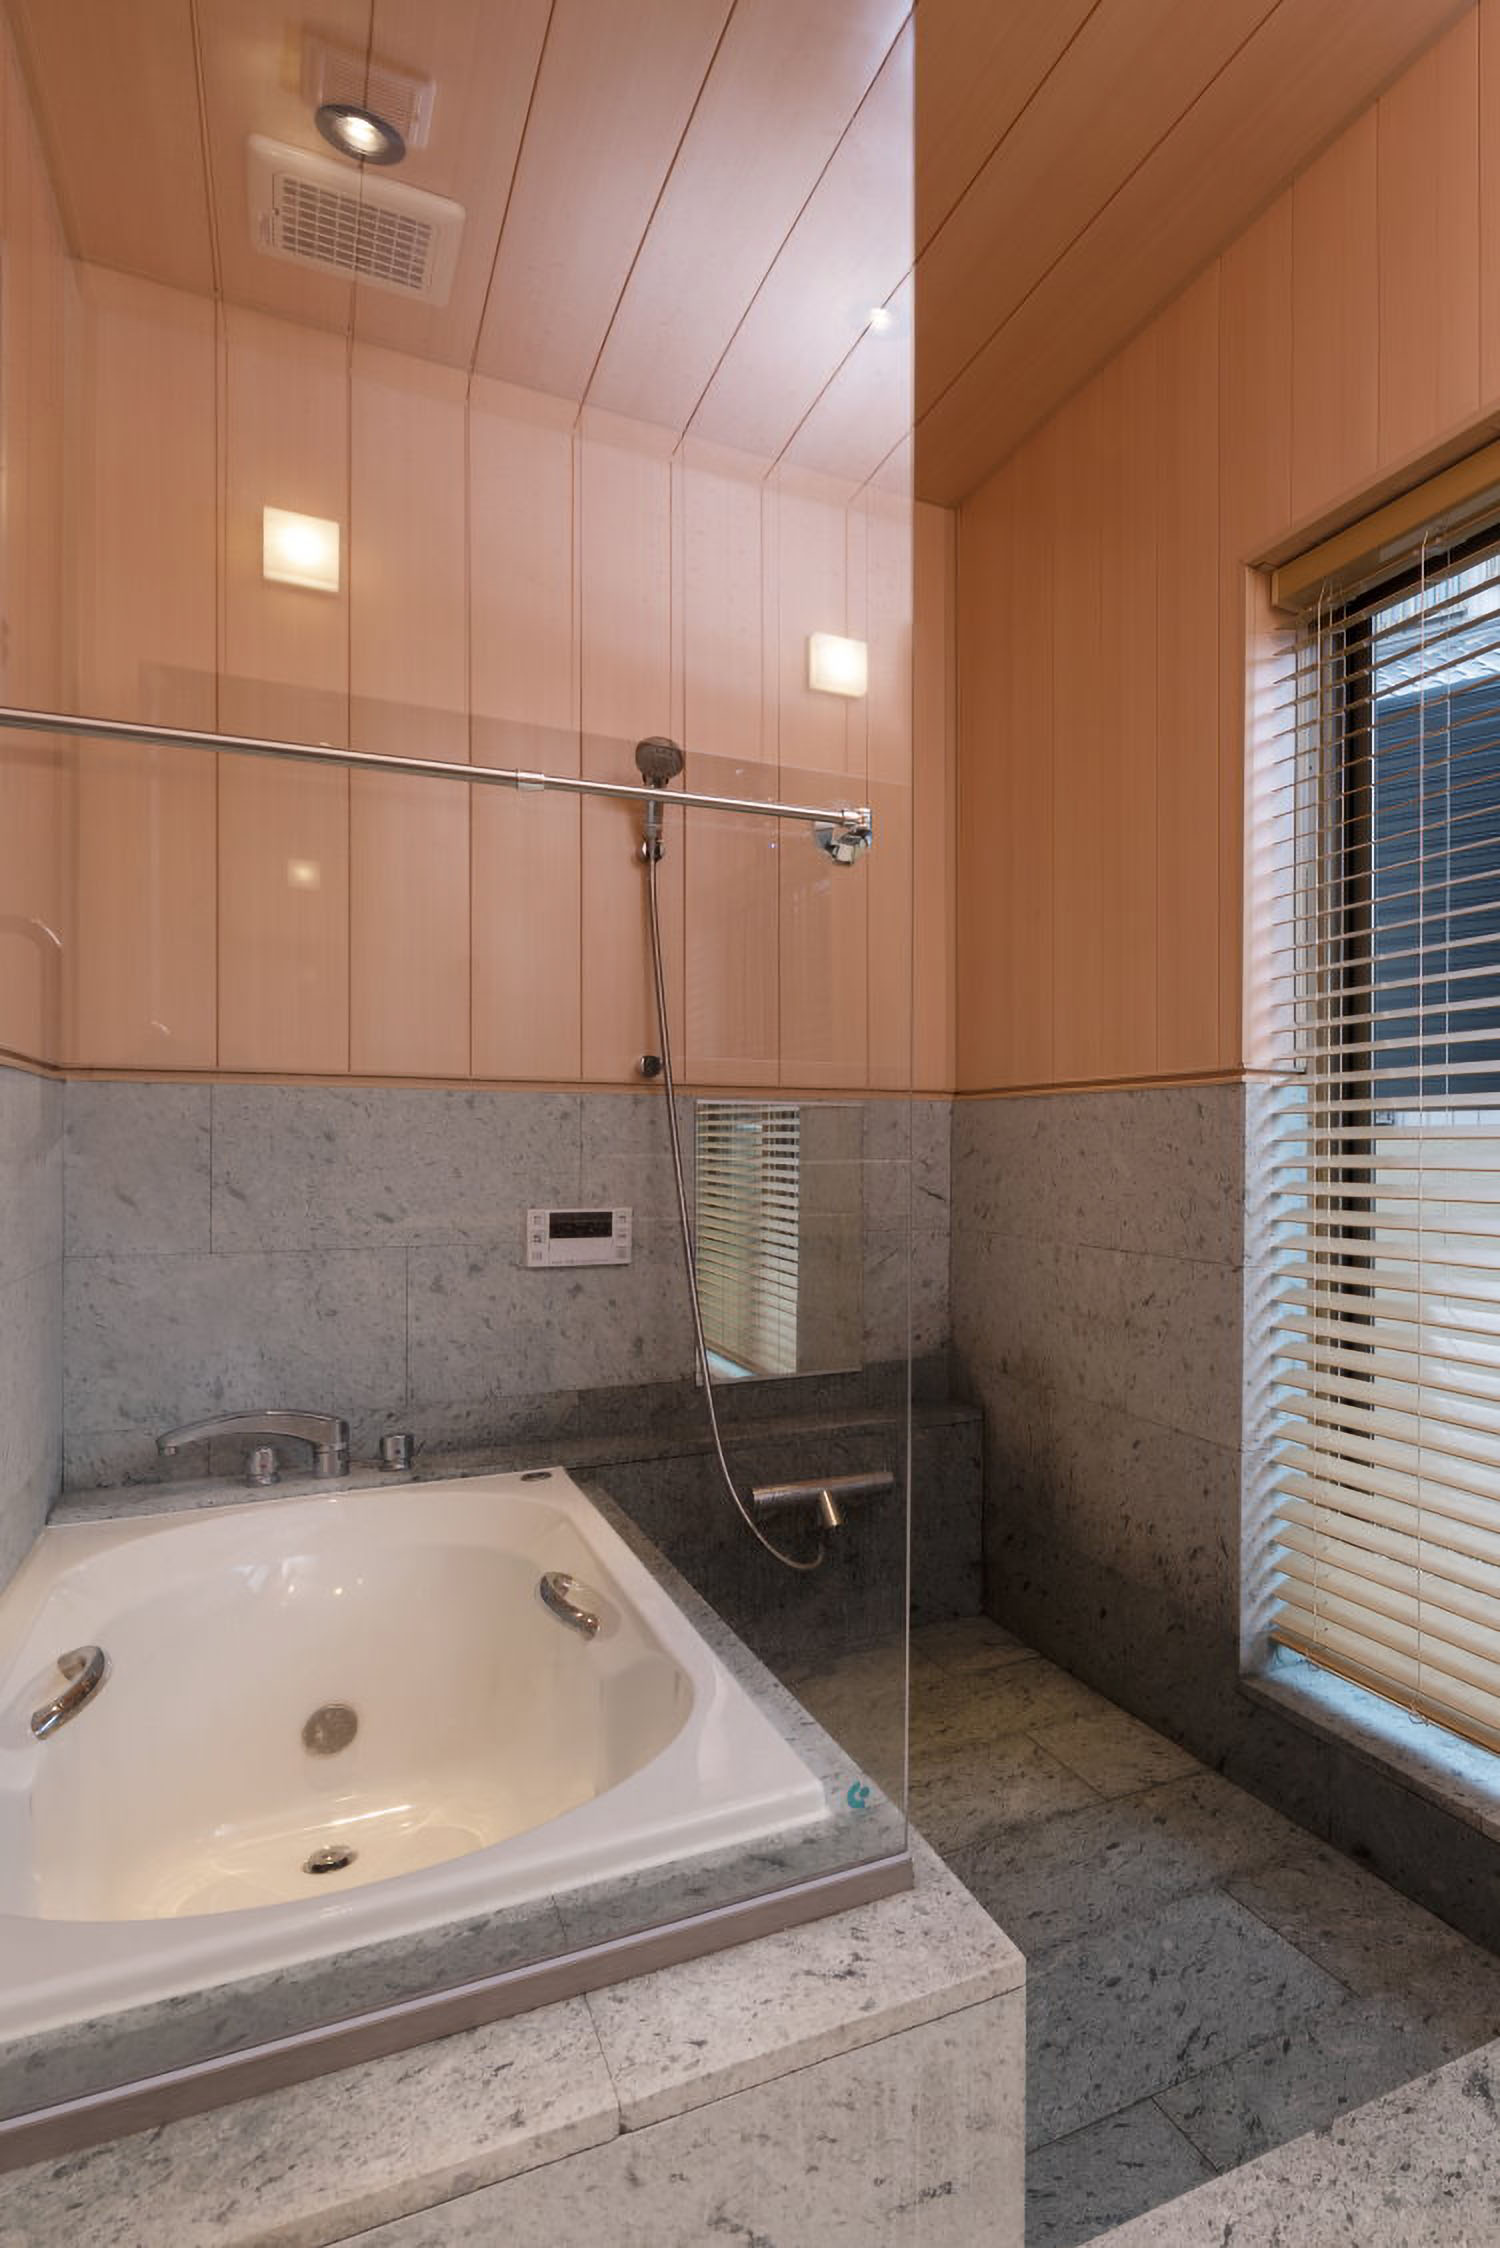 浴室には、美しい風合いと吸水機能や保温効果を有する秋田県「十和田石」を採用。木と石の自然素材の美しさはもちろん、冬場でも足元が冷たくないように床暖房を備えている